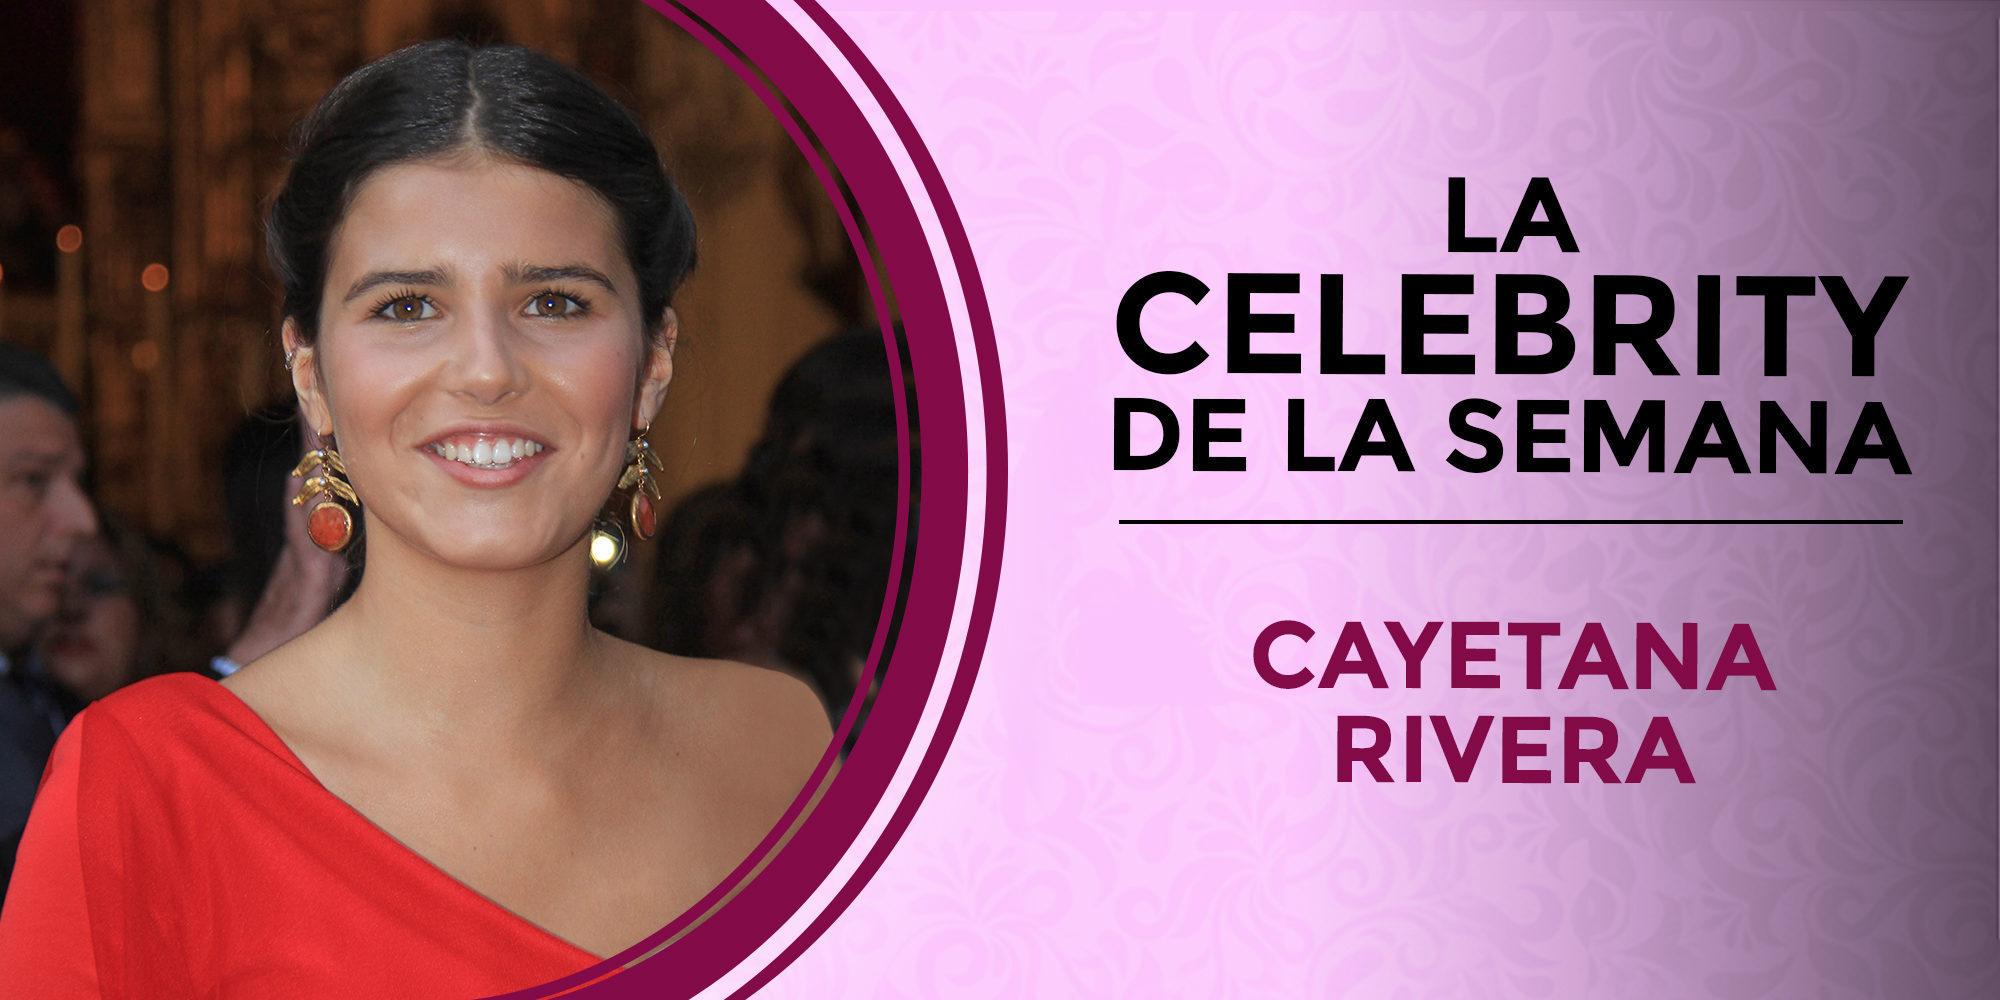 Cayetana Rivera se convierte en la celebrity de la semana por cumplir la mayoría de edad